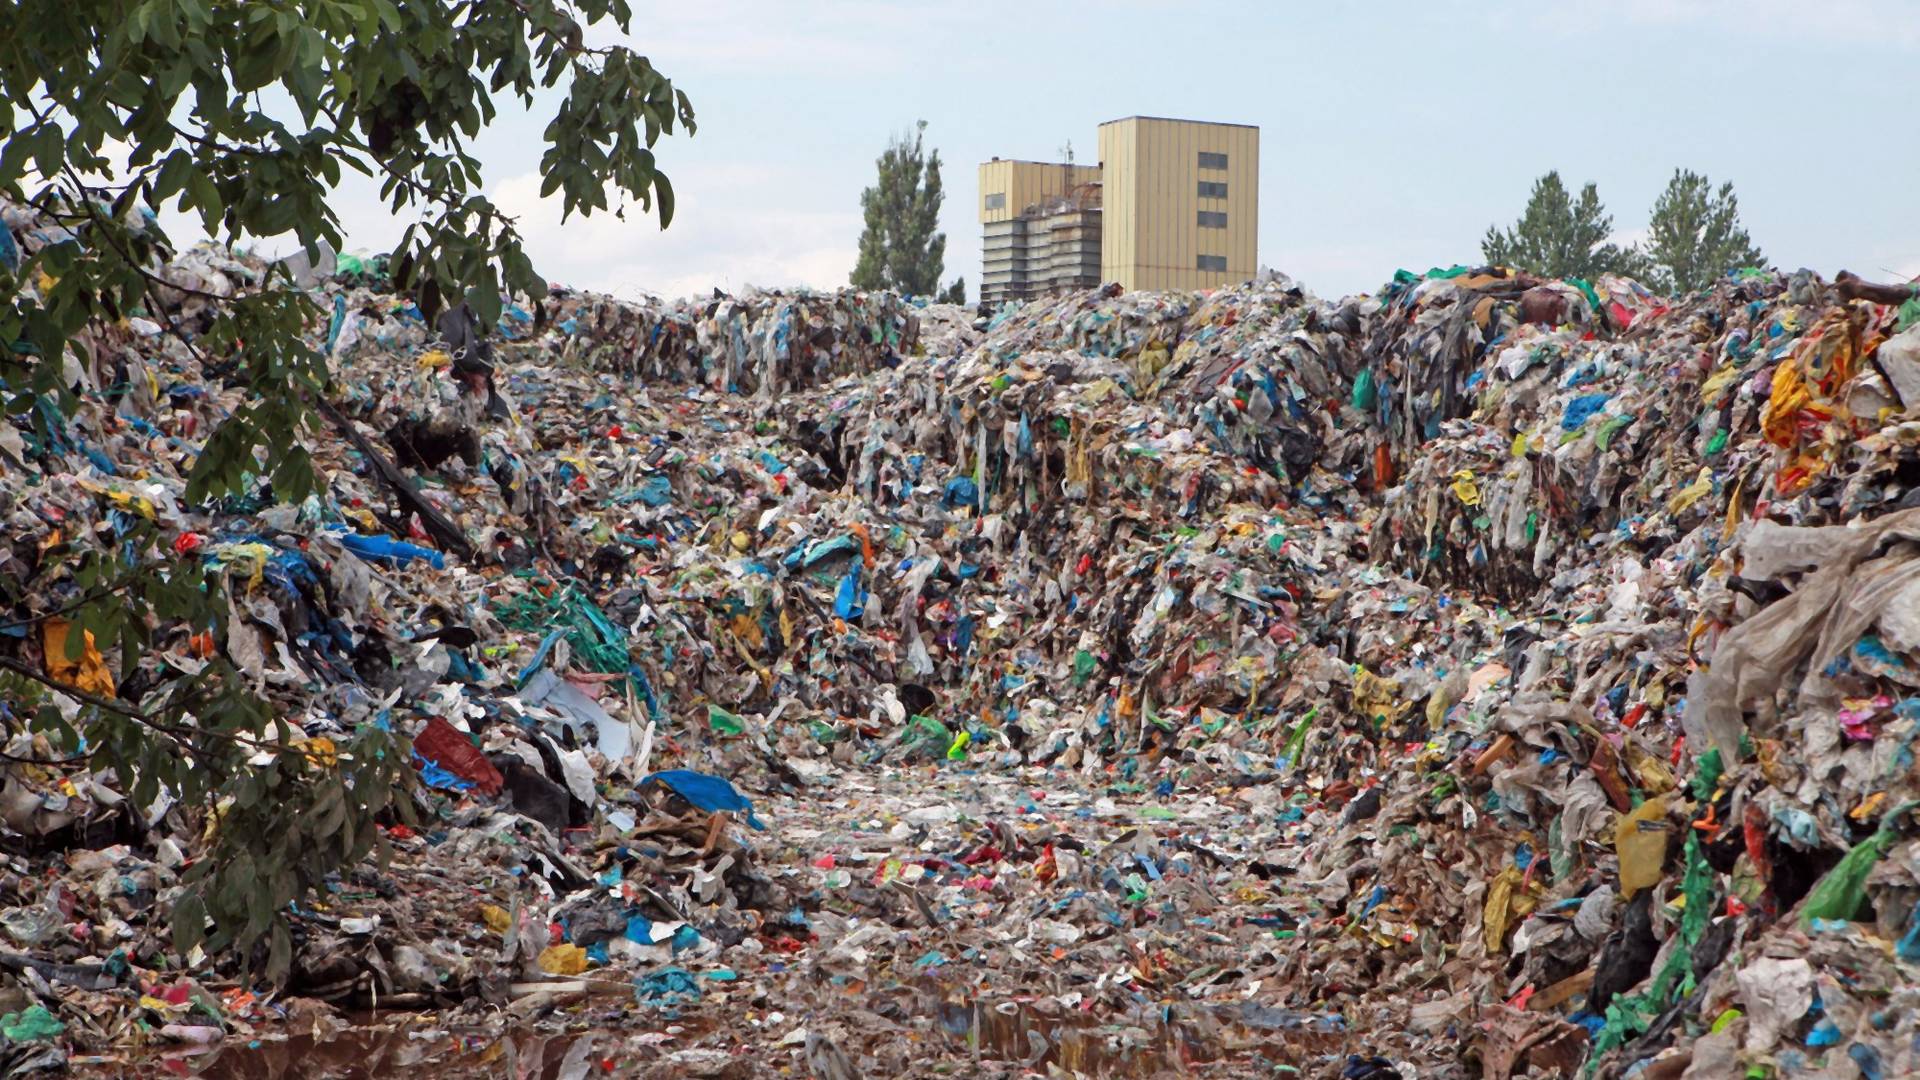 Wielka Brytania i Niemcy traktują nasz kraj jak śmietnik. Polska nie radzi sobie z recyklingiem